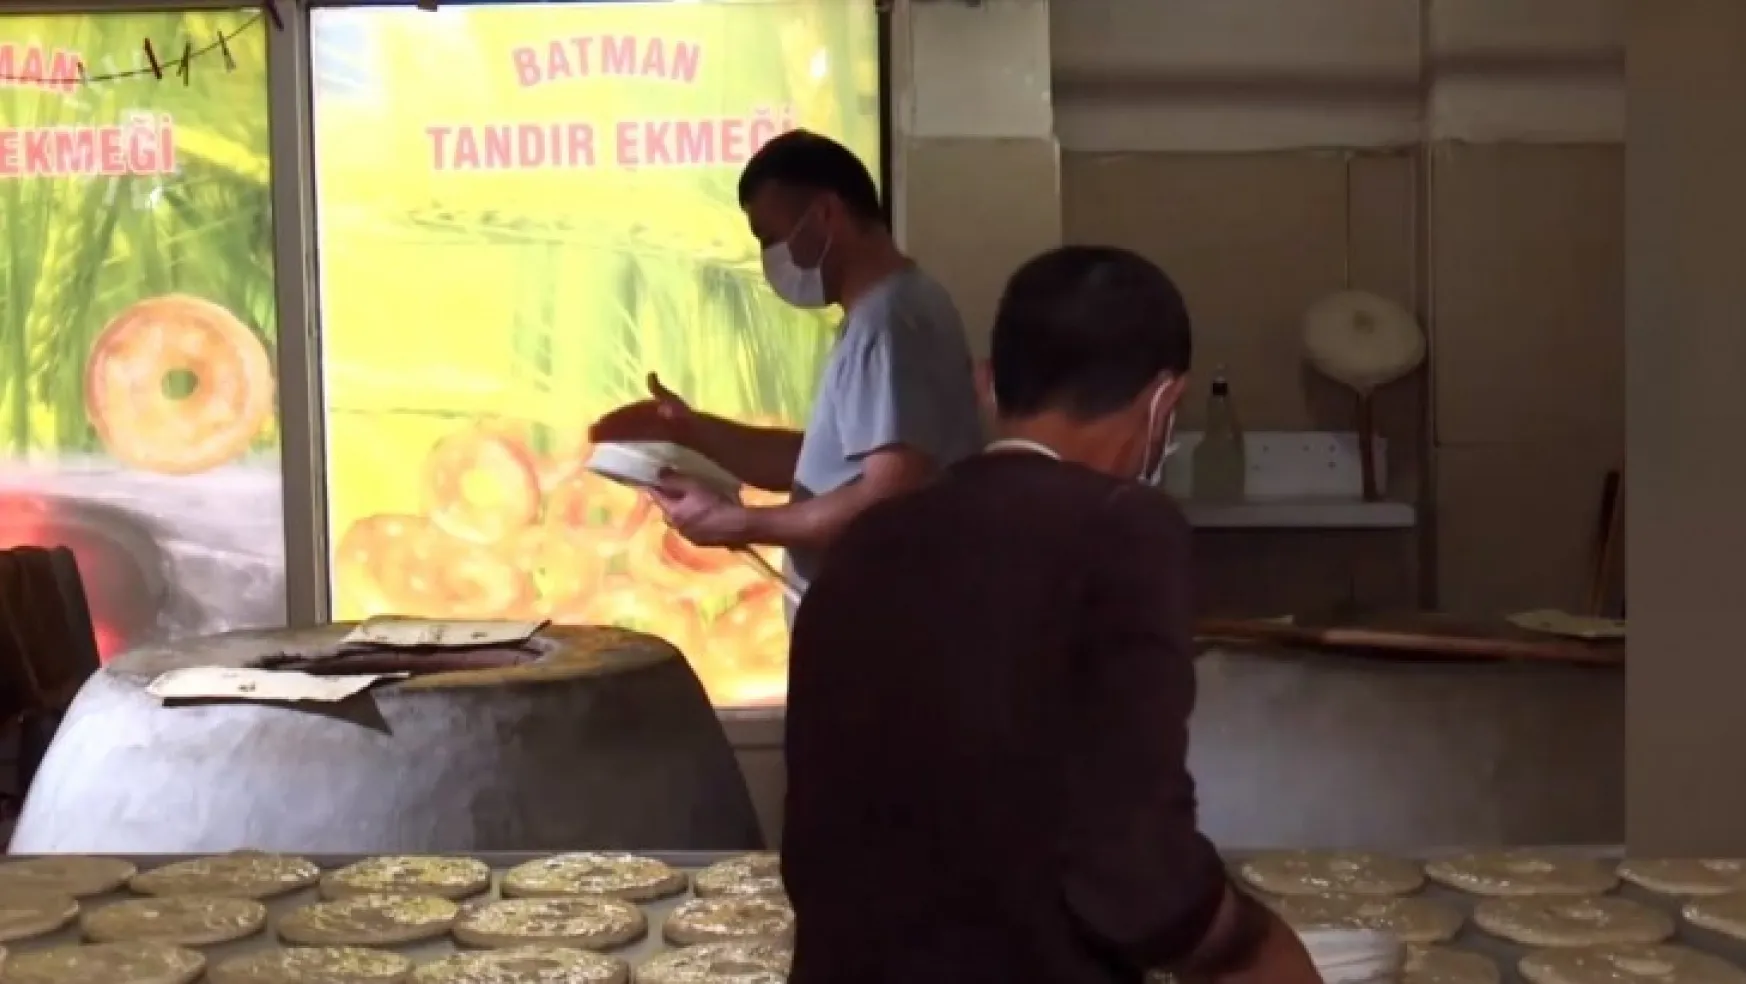 Fırın Ekmeğine Karşı Batman Tandır Ekmeği